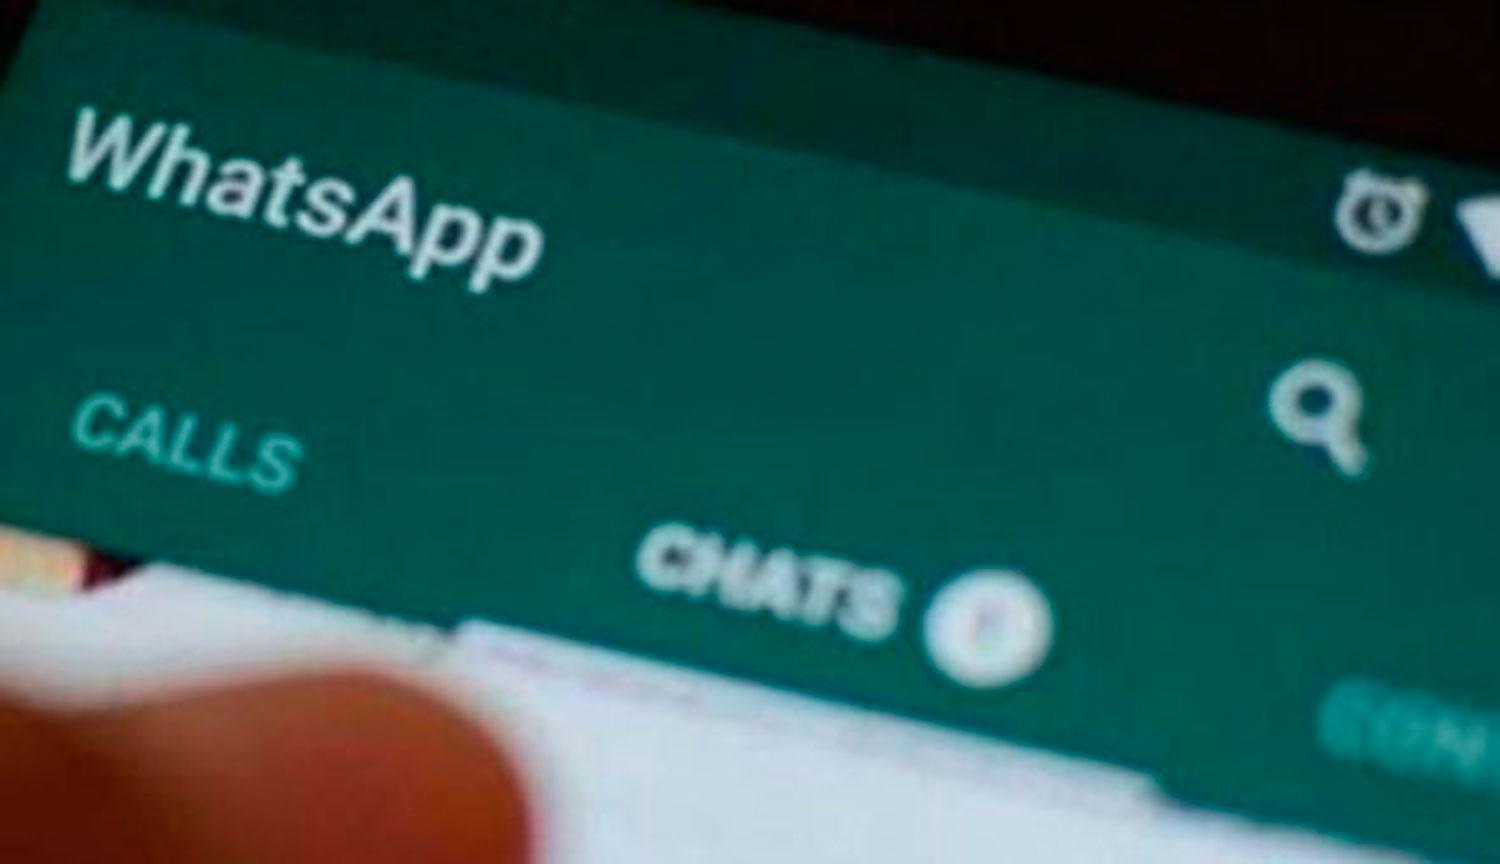 WhatsApp comenzará a mostrar publicidad a partir del 2020